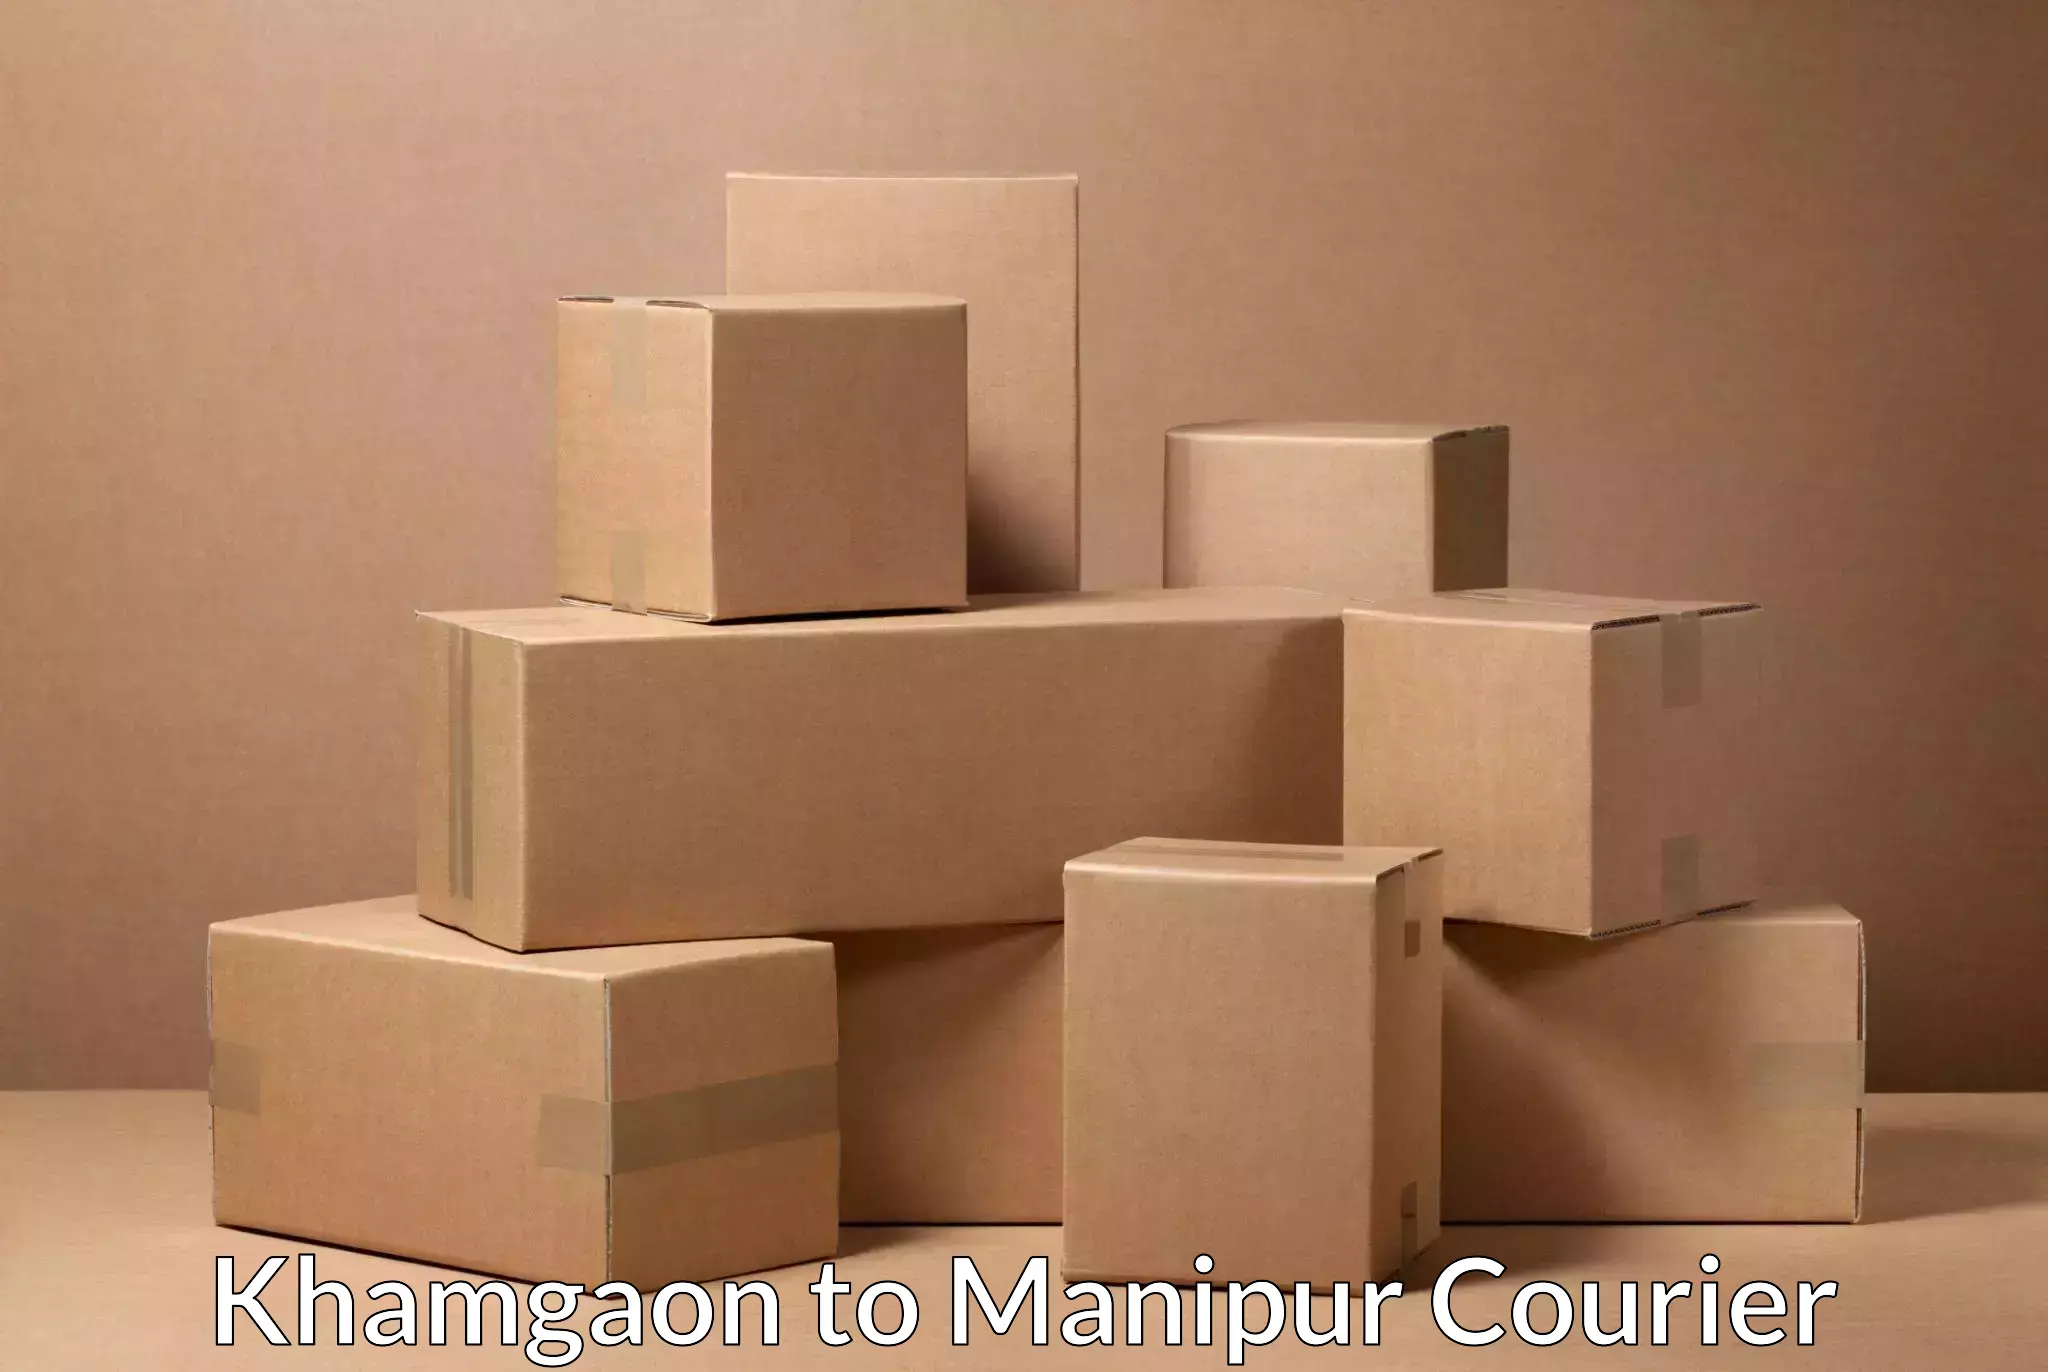 Global parcel delivery Khamgaon to Kangpokpi